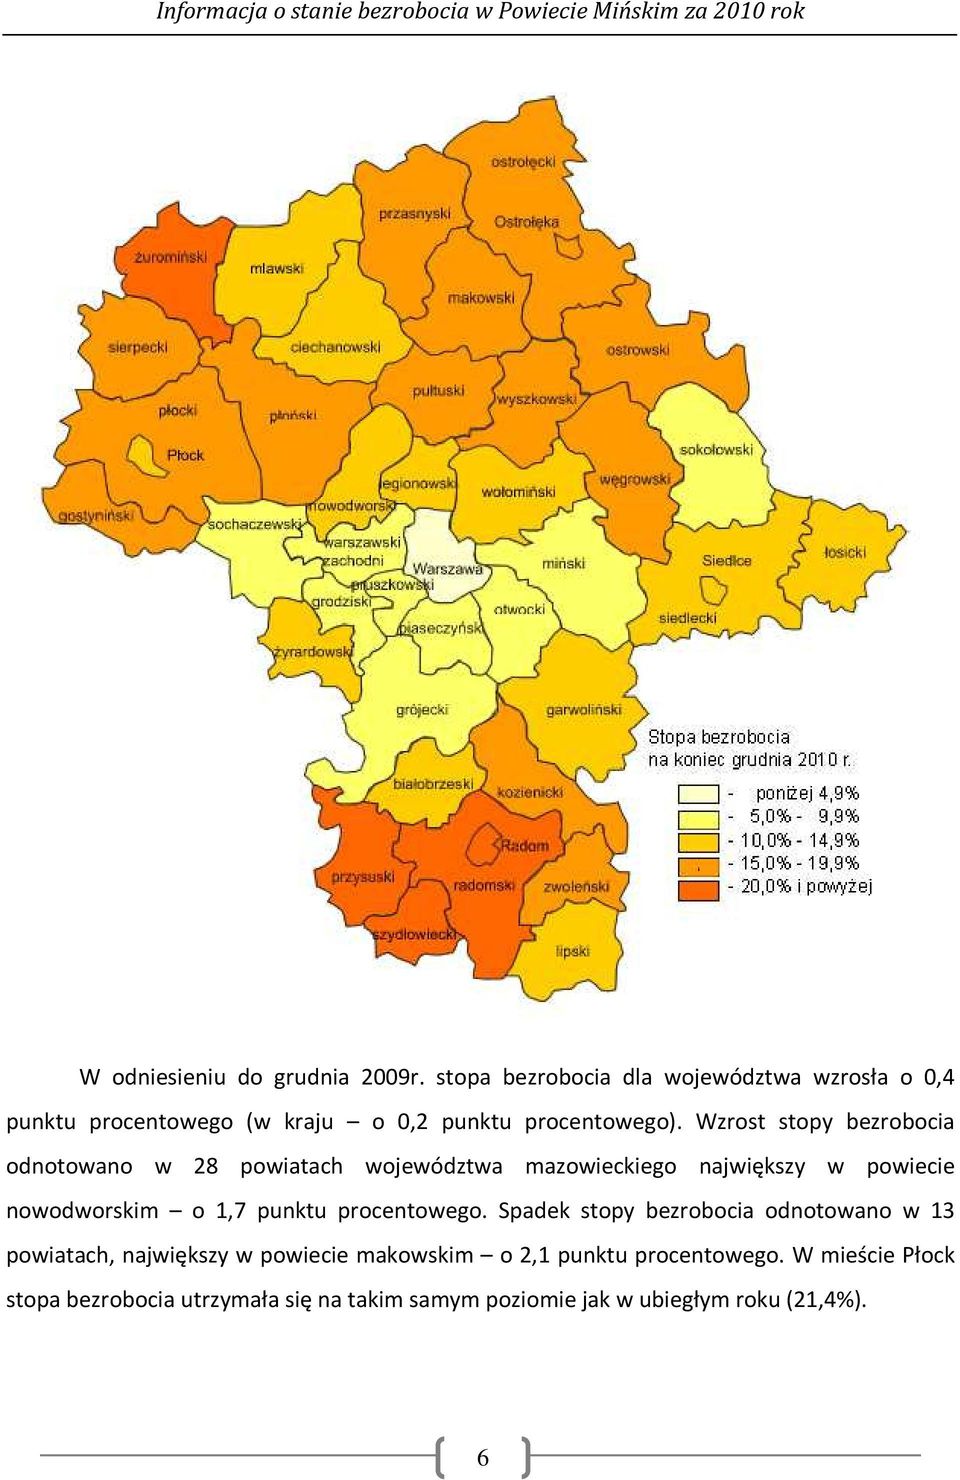 Wzrost stopy bezrobocia odnotowano w 28 powiatach województwa mazowieckiego największy w powiecie nowodworskim o 1,7